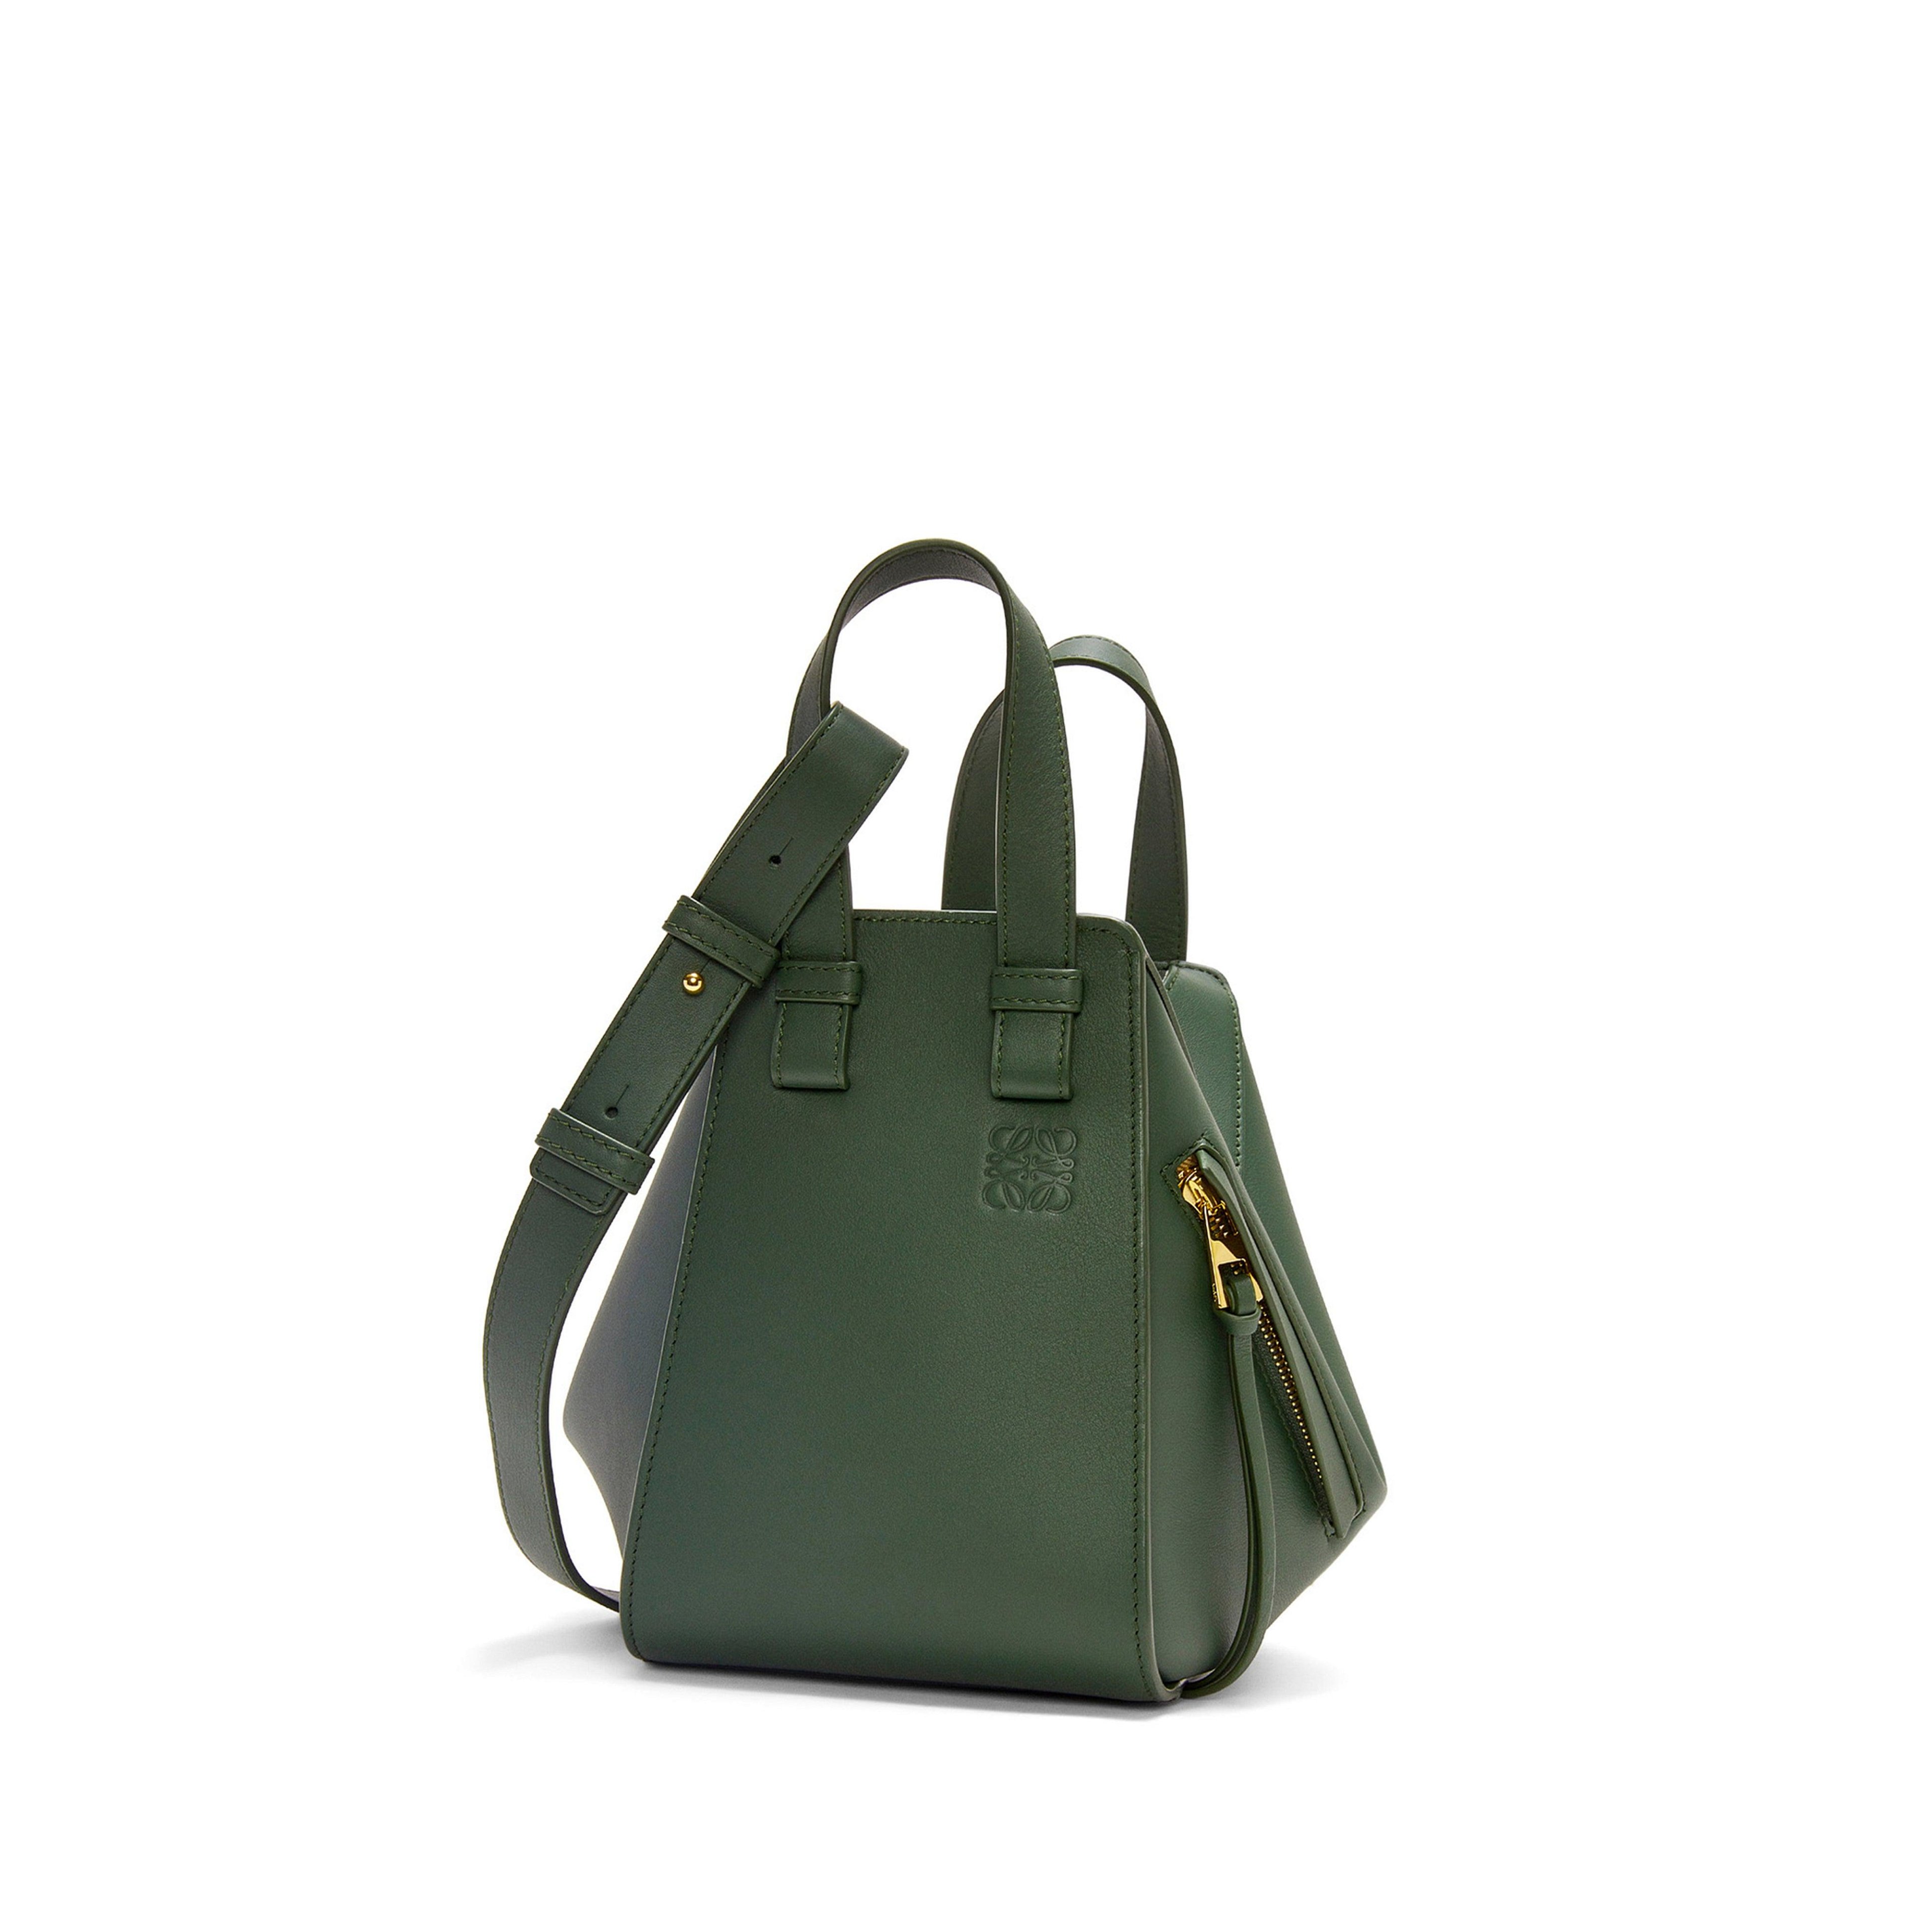 Loewe - Women's Hammock Compact Bag - (Bottle Green) by LOEWE